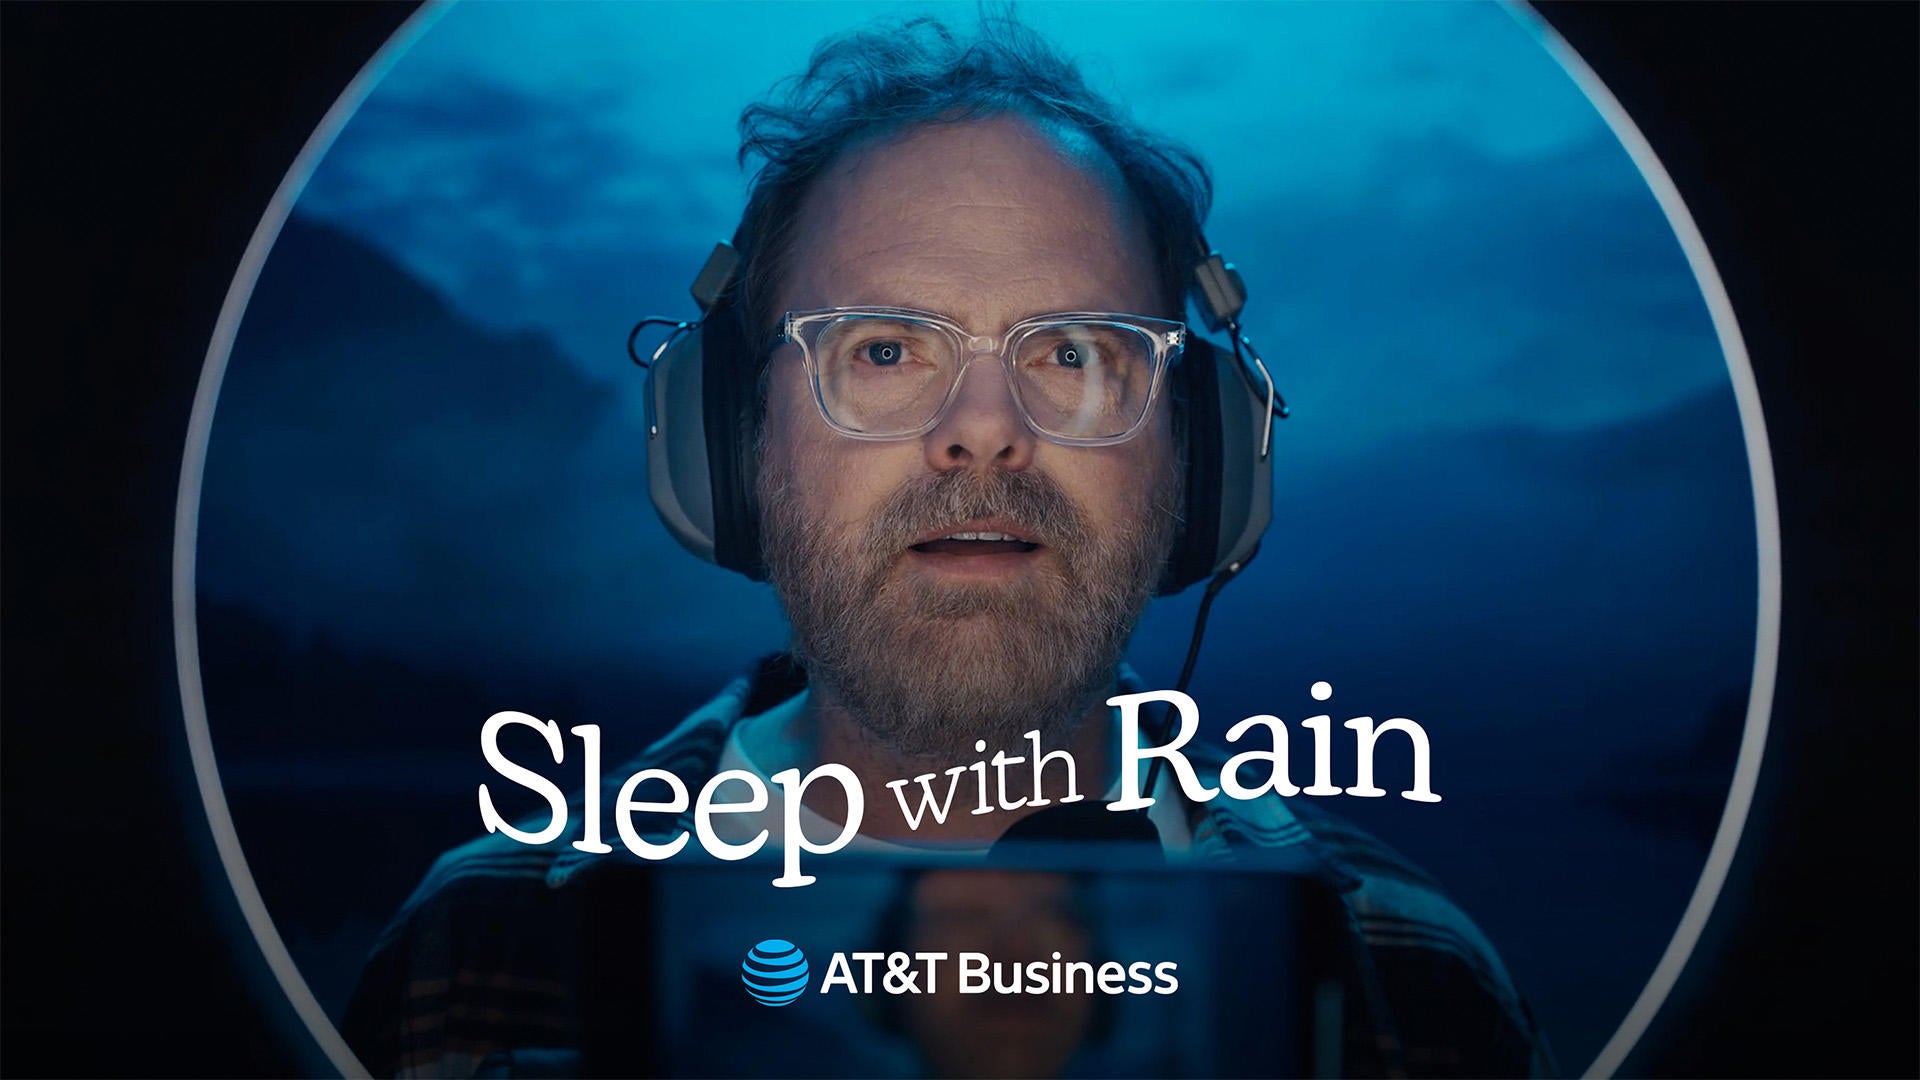 sleep-with-rain-logo-1920x1080.jpg